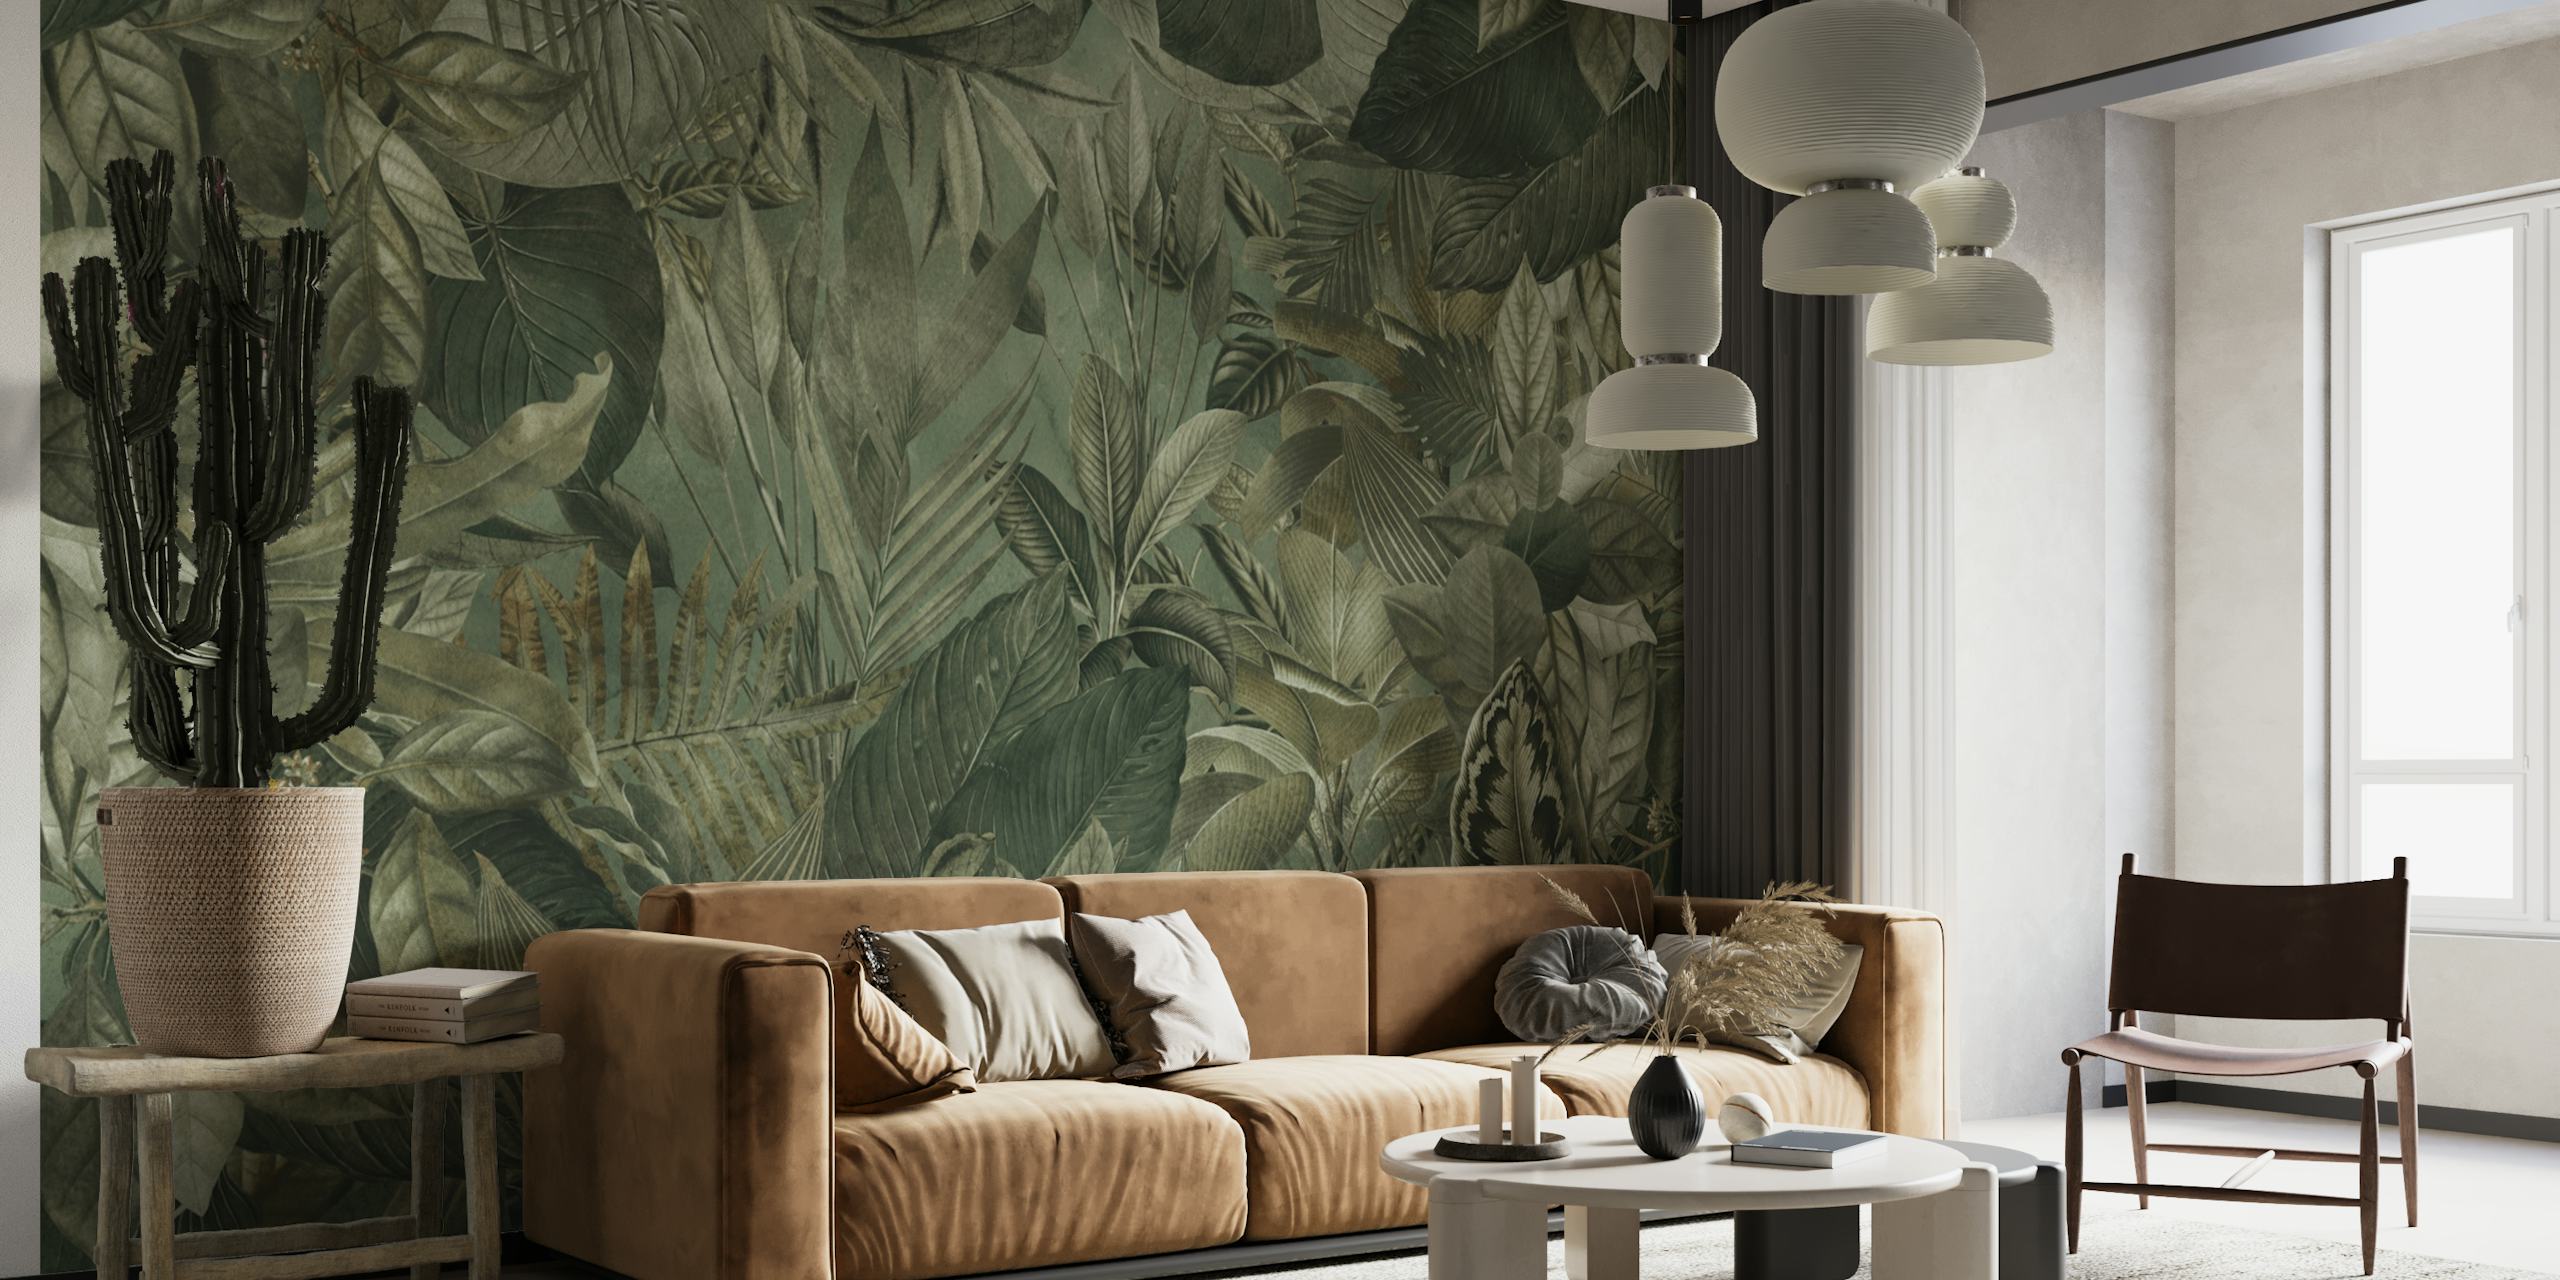 Murale a tema giungla tropicale che mostra fogliame verde oliva ed elementi botanici.